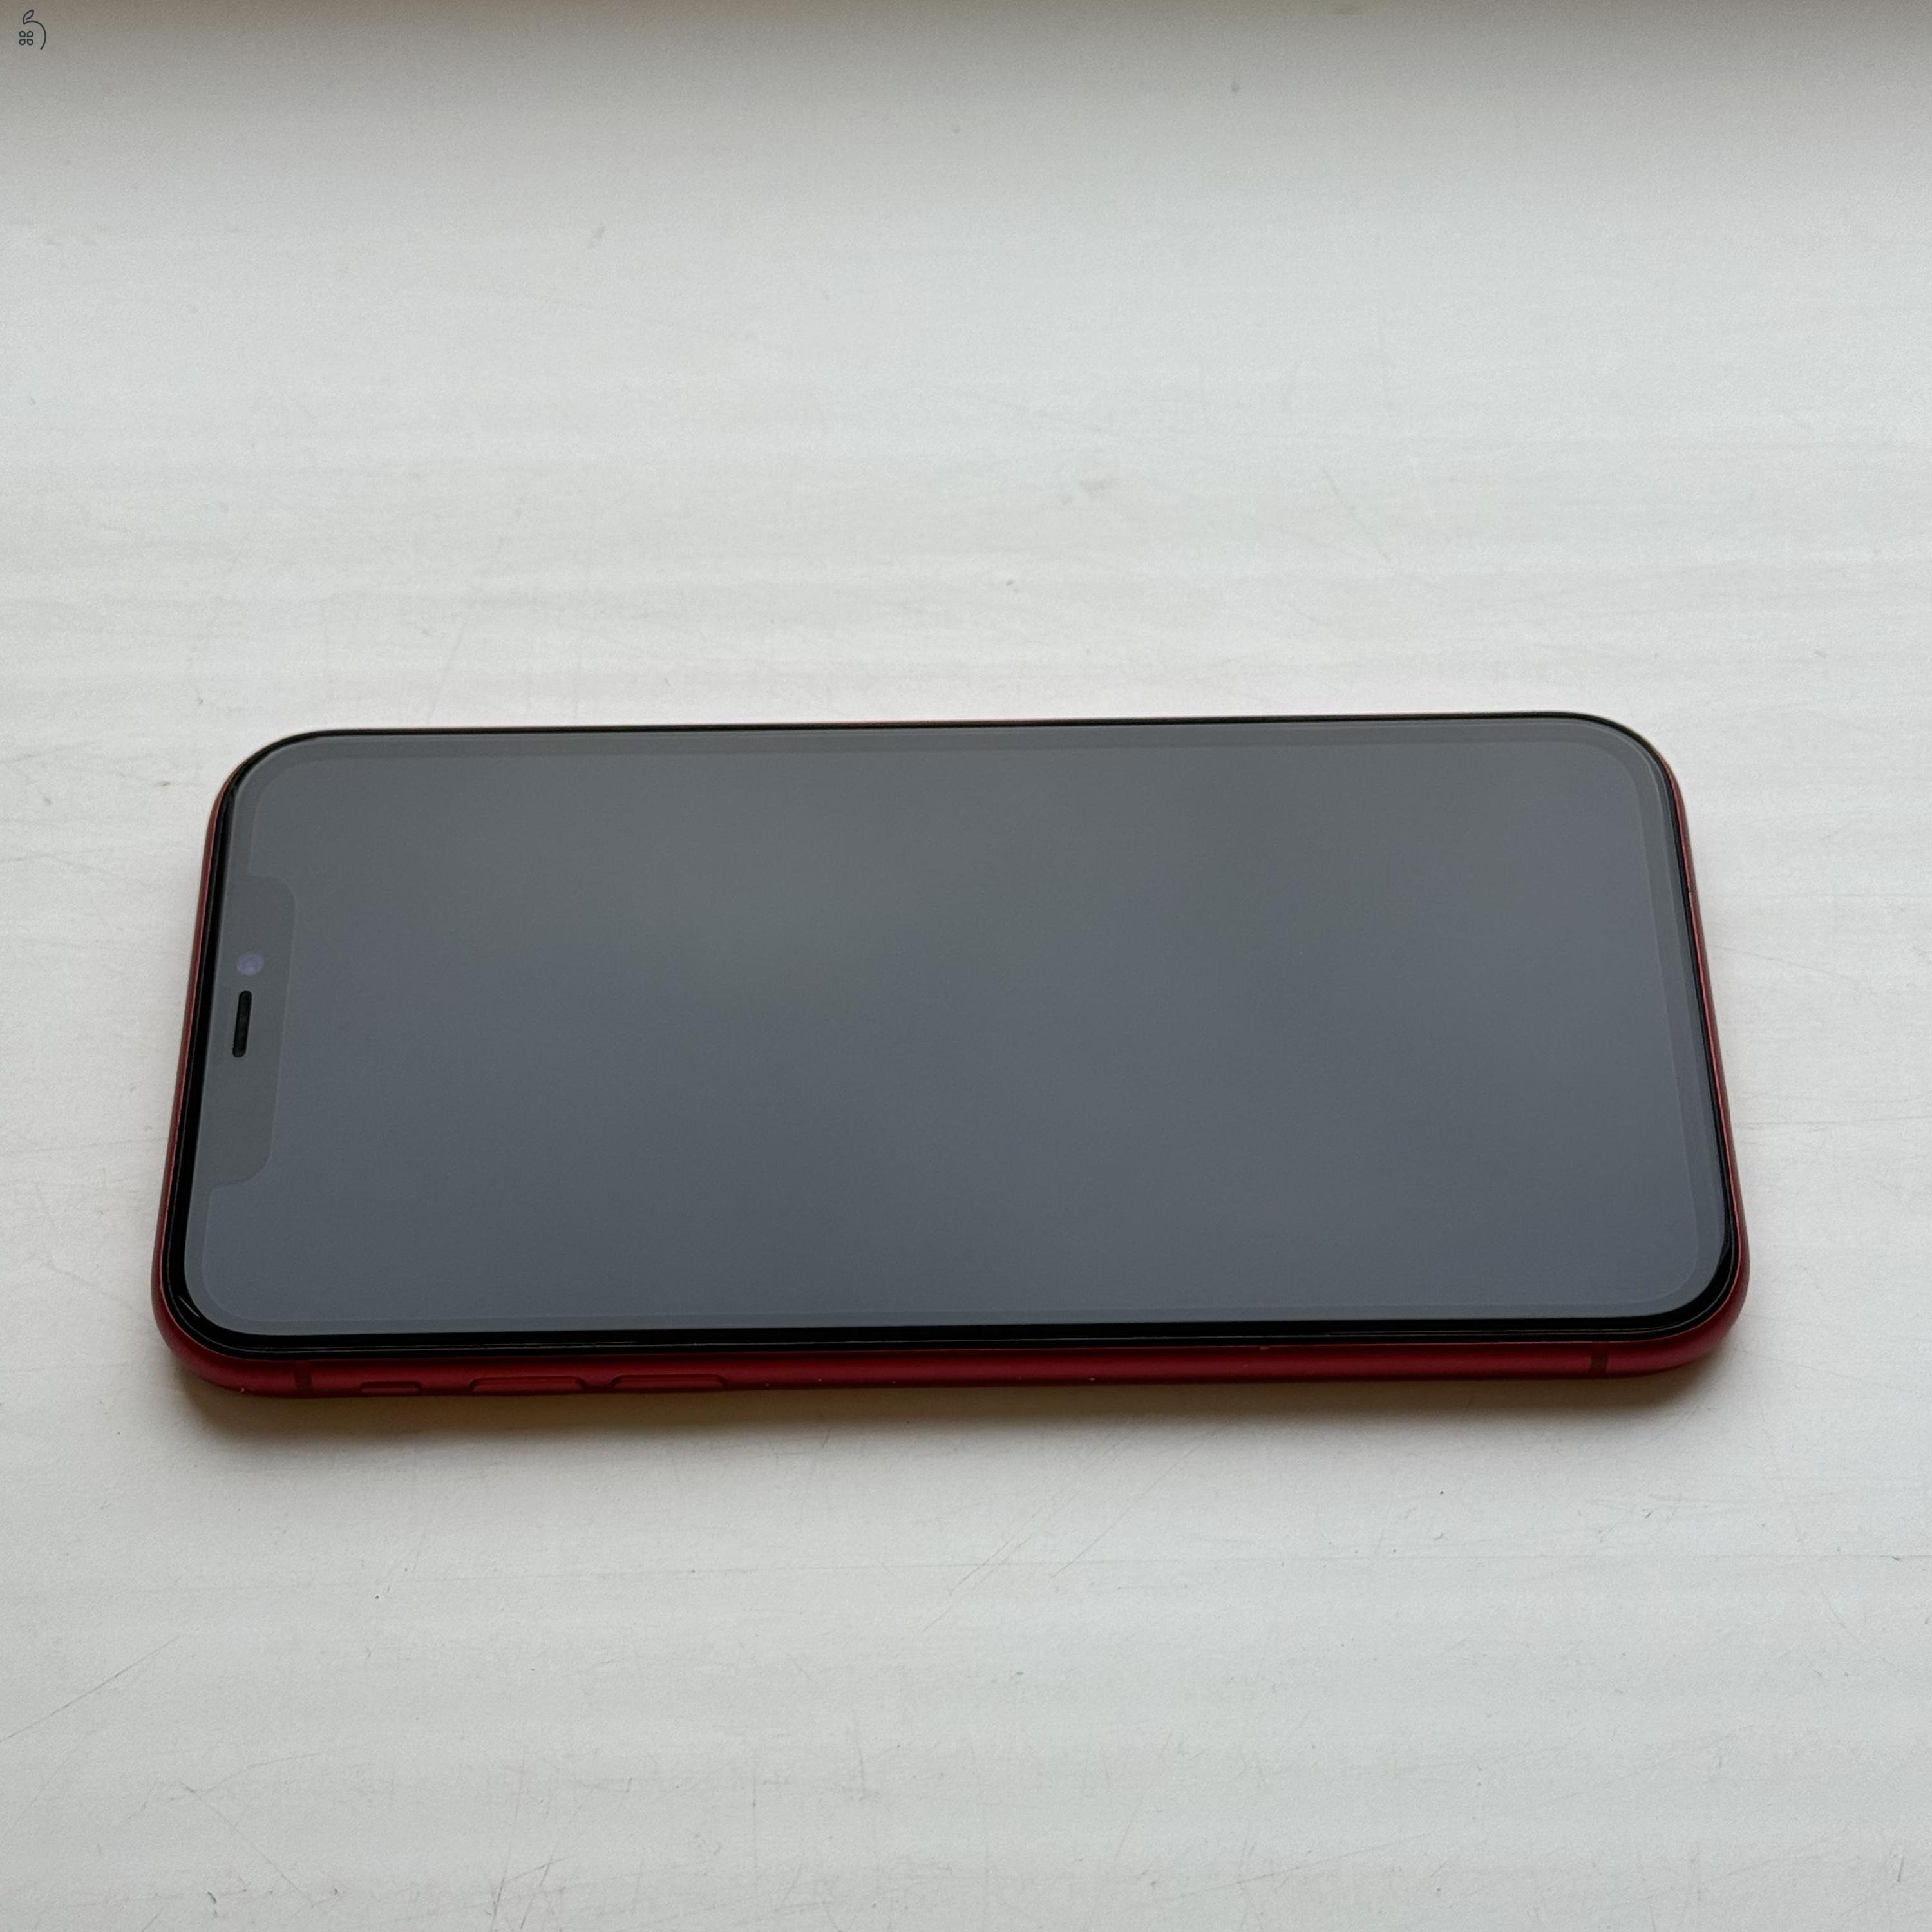 KARCMENTES iPhone 11 64GB Red - 1 ÉV Garancia , Kártyafüggetlen